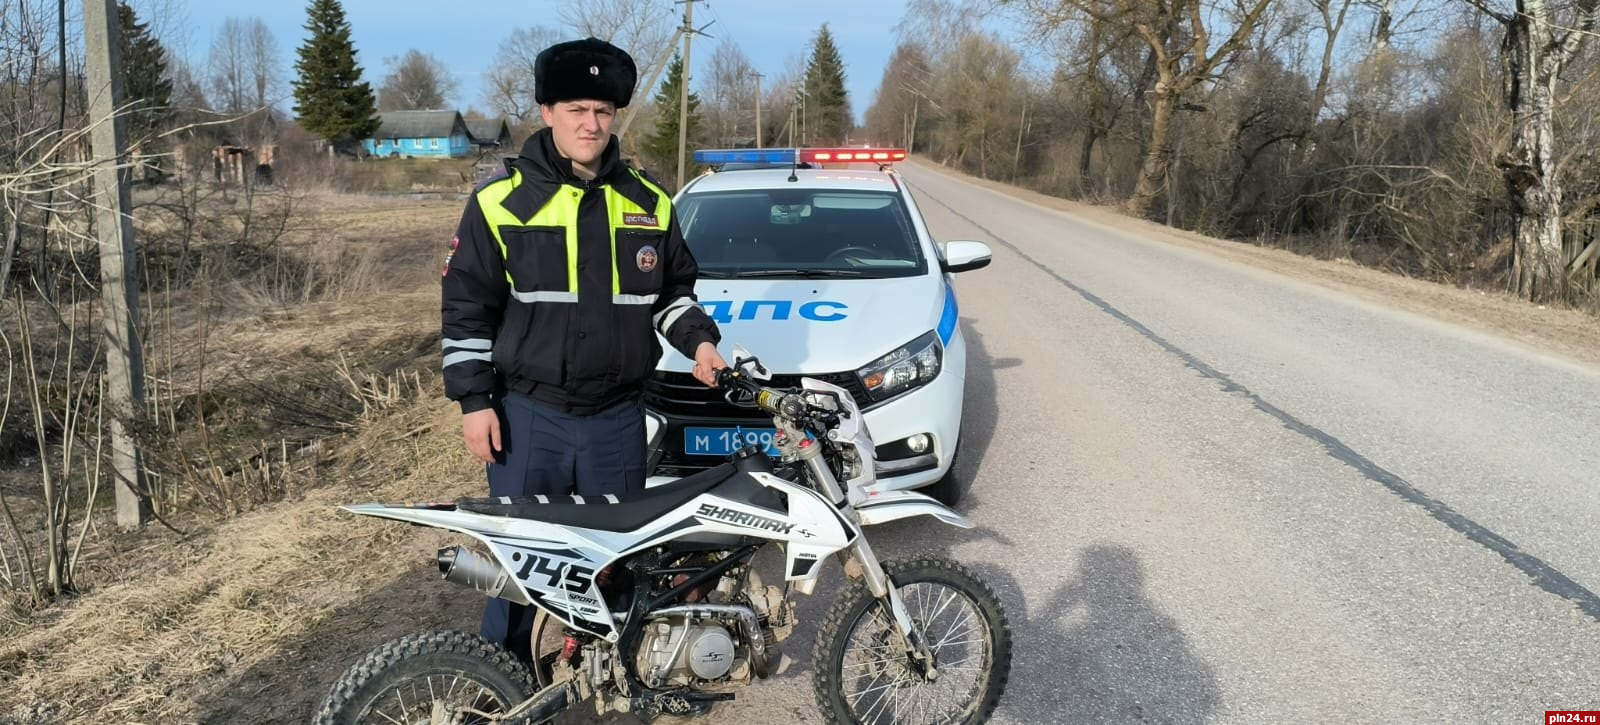 Несовершеннолетний водитель мотоцикла остановлен в Палкинском районе